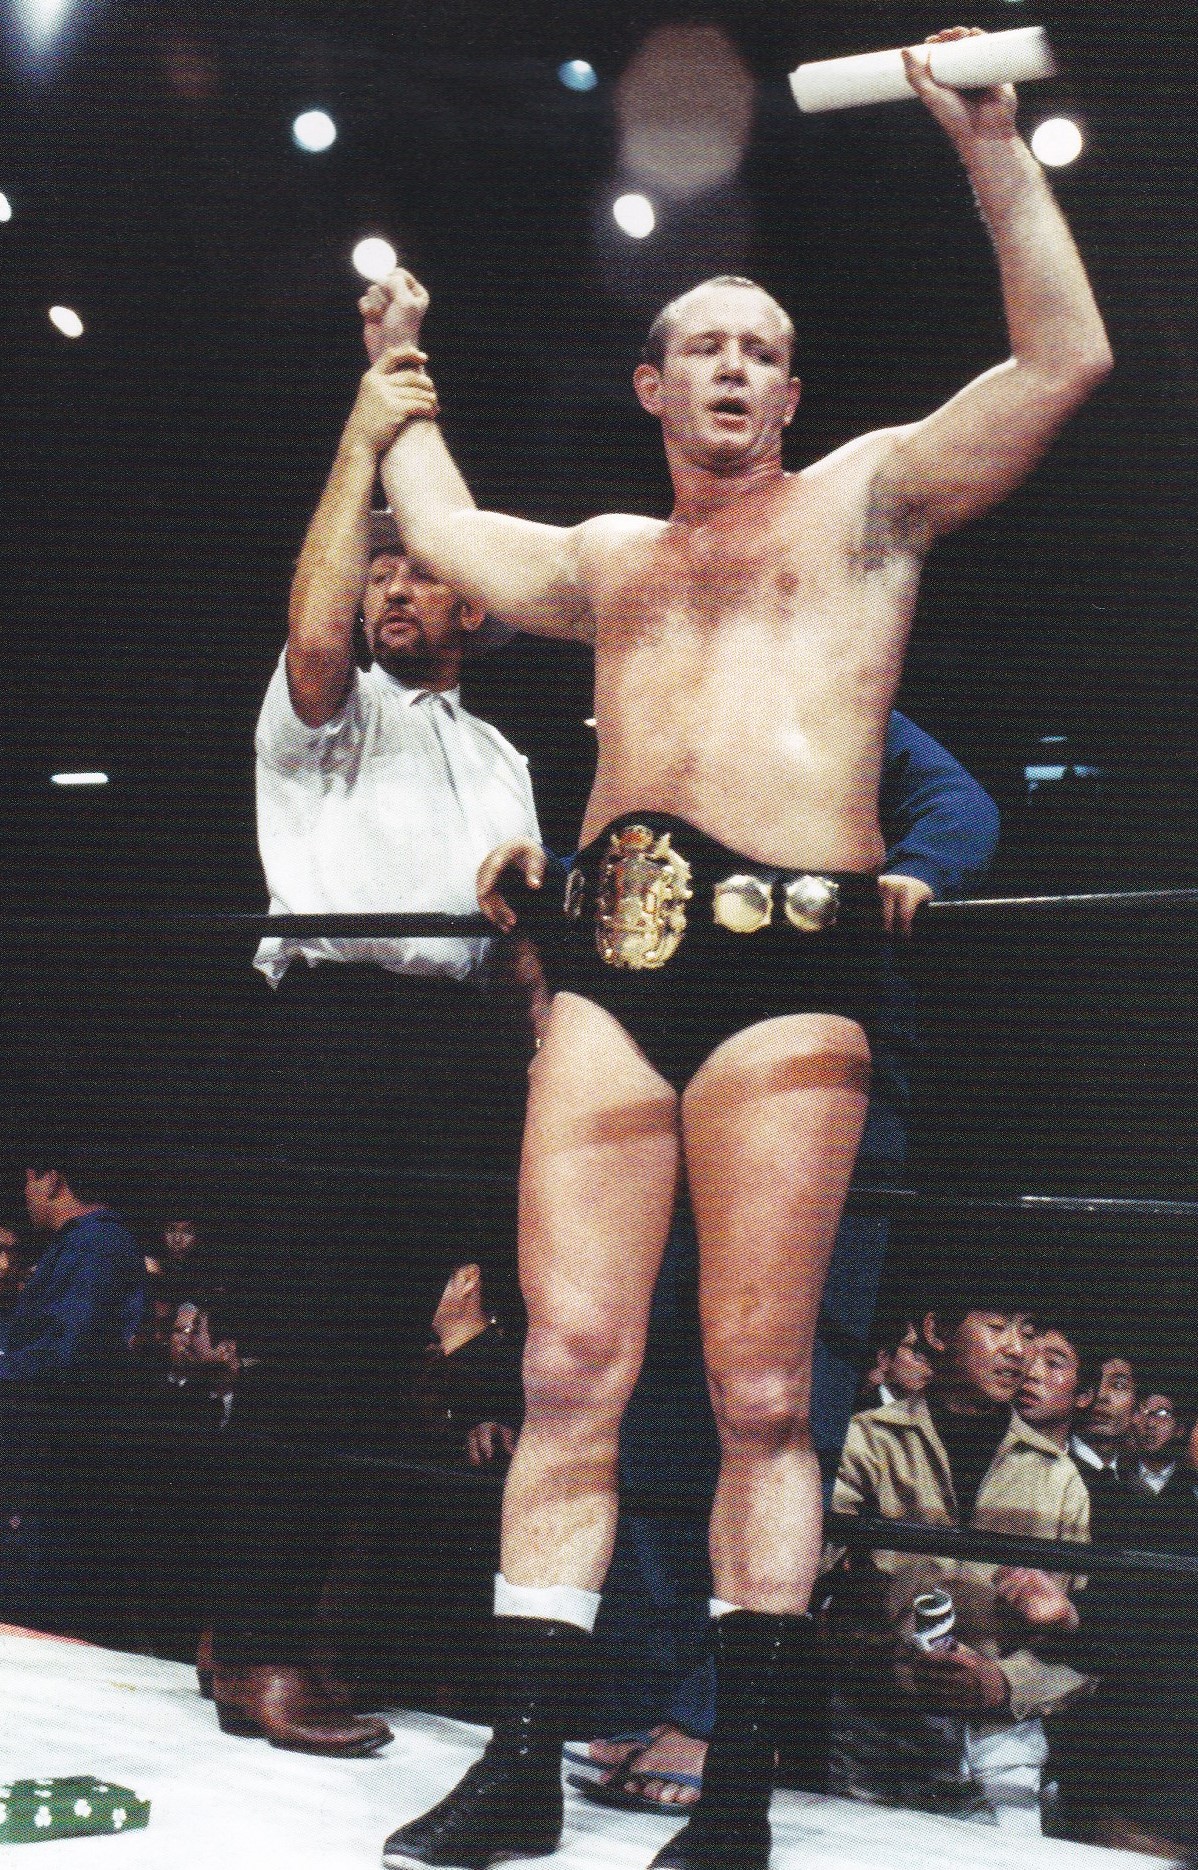 NWA 世界ヘビー級チャンピオンベルト(ドリーファンクJR,テリーファンク)